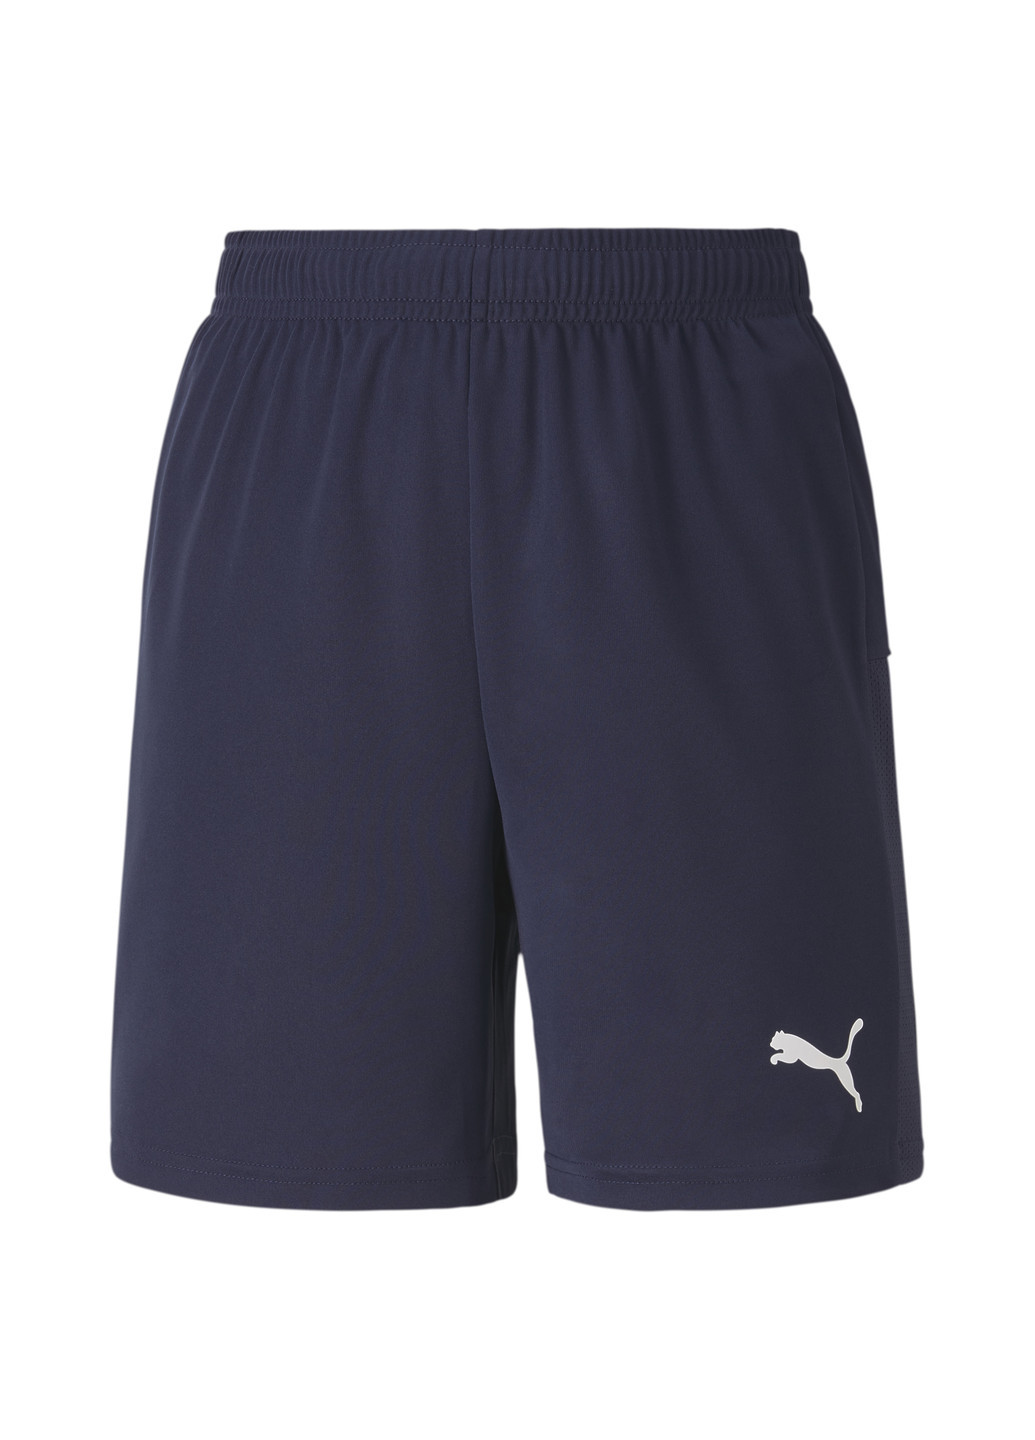 Детские шорты teamGOAL 23 knit Shorts Jr Puma однотонные синие спортивные полиэстер